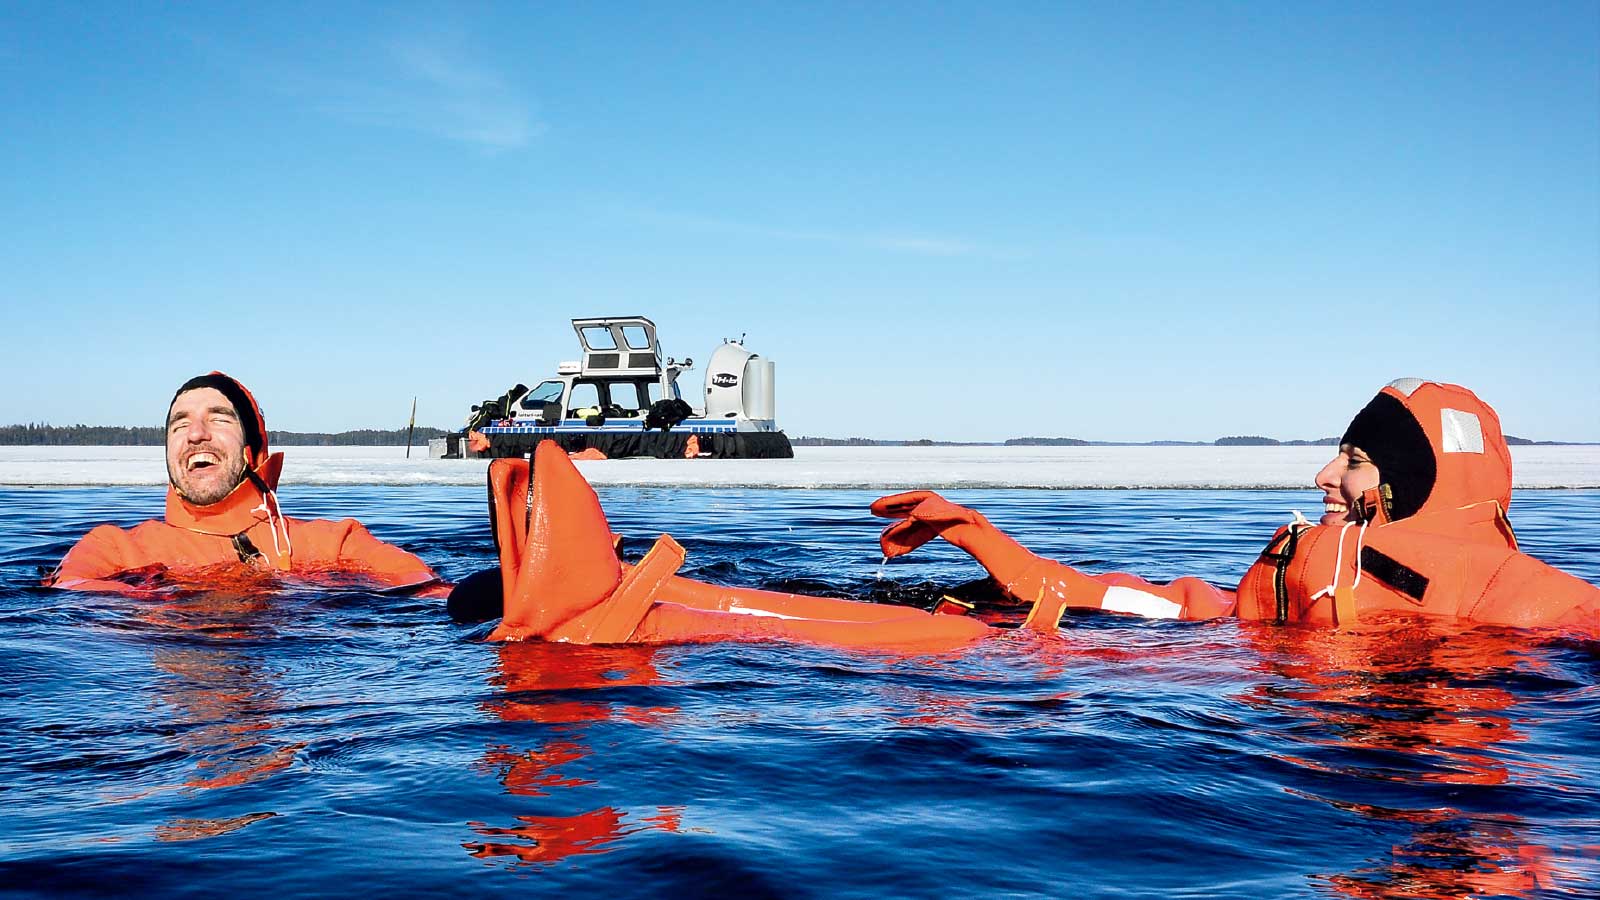 氷を割って海に浮かぶリラクセーション体験「Redrib」